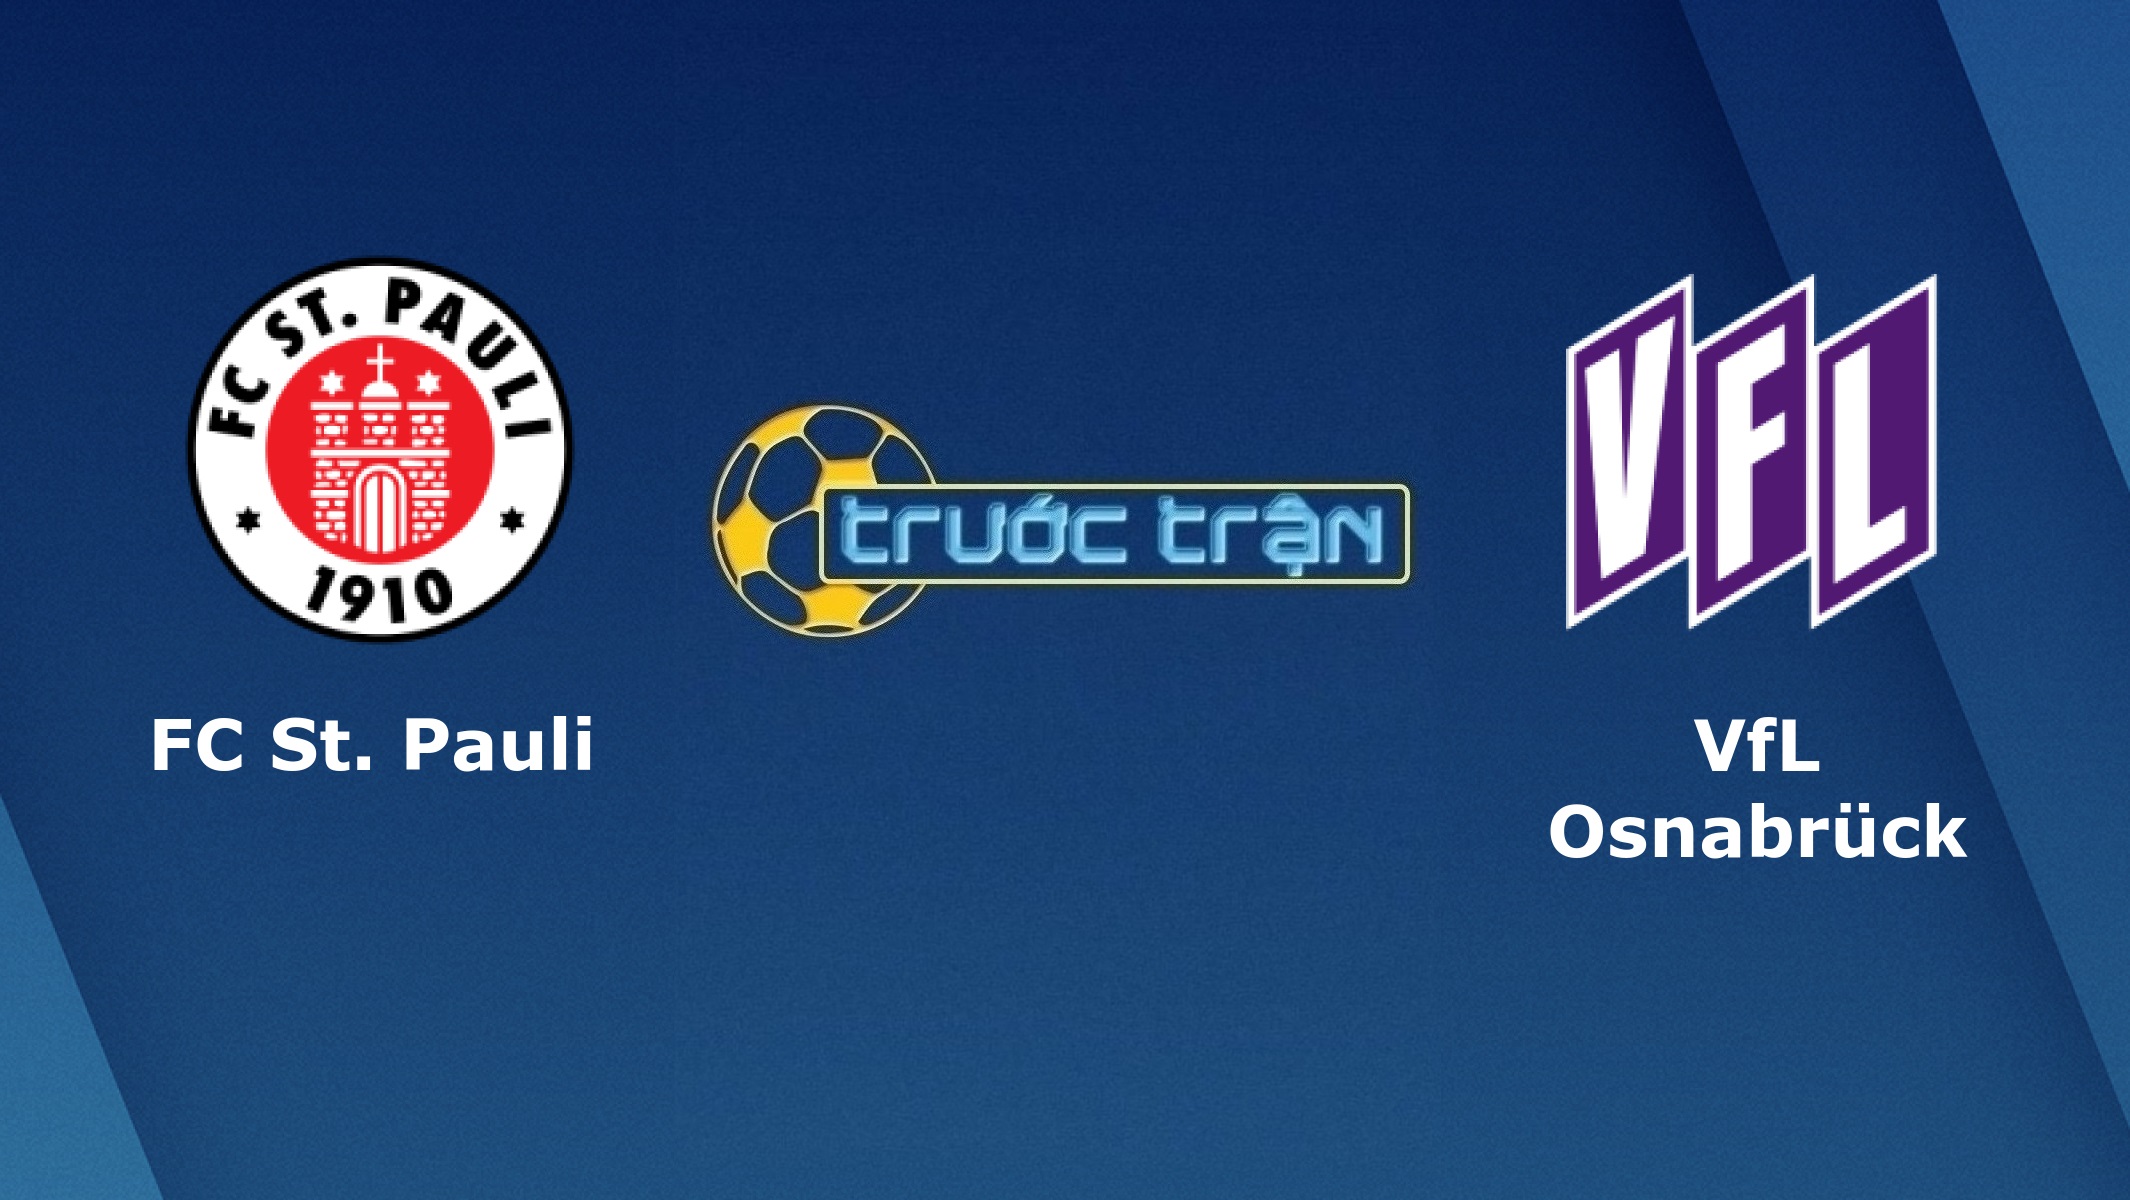 St. Pauli vs VfL Osnabruck – Tip kèo bóng đá hôm nay – 00h30 28/11/2020